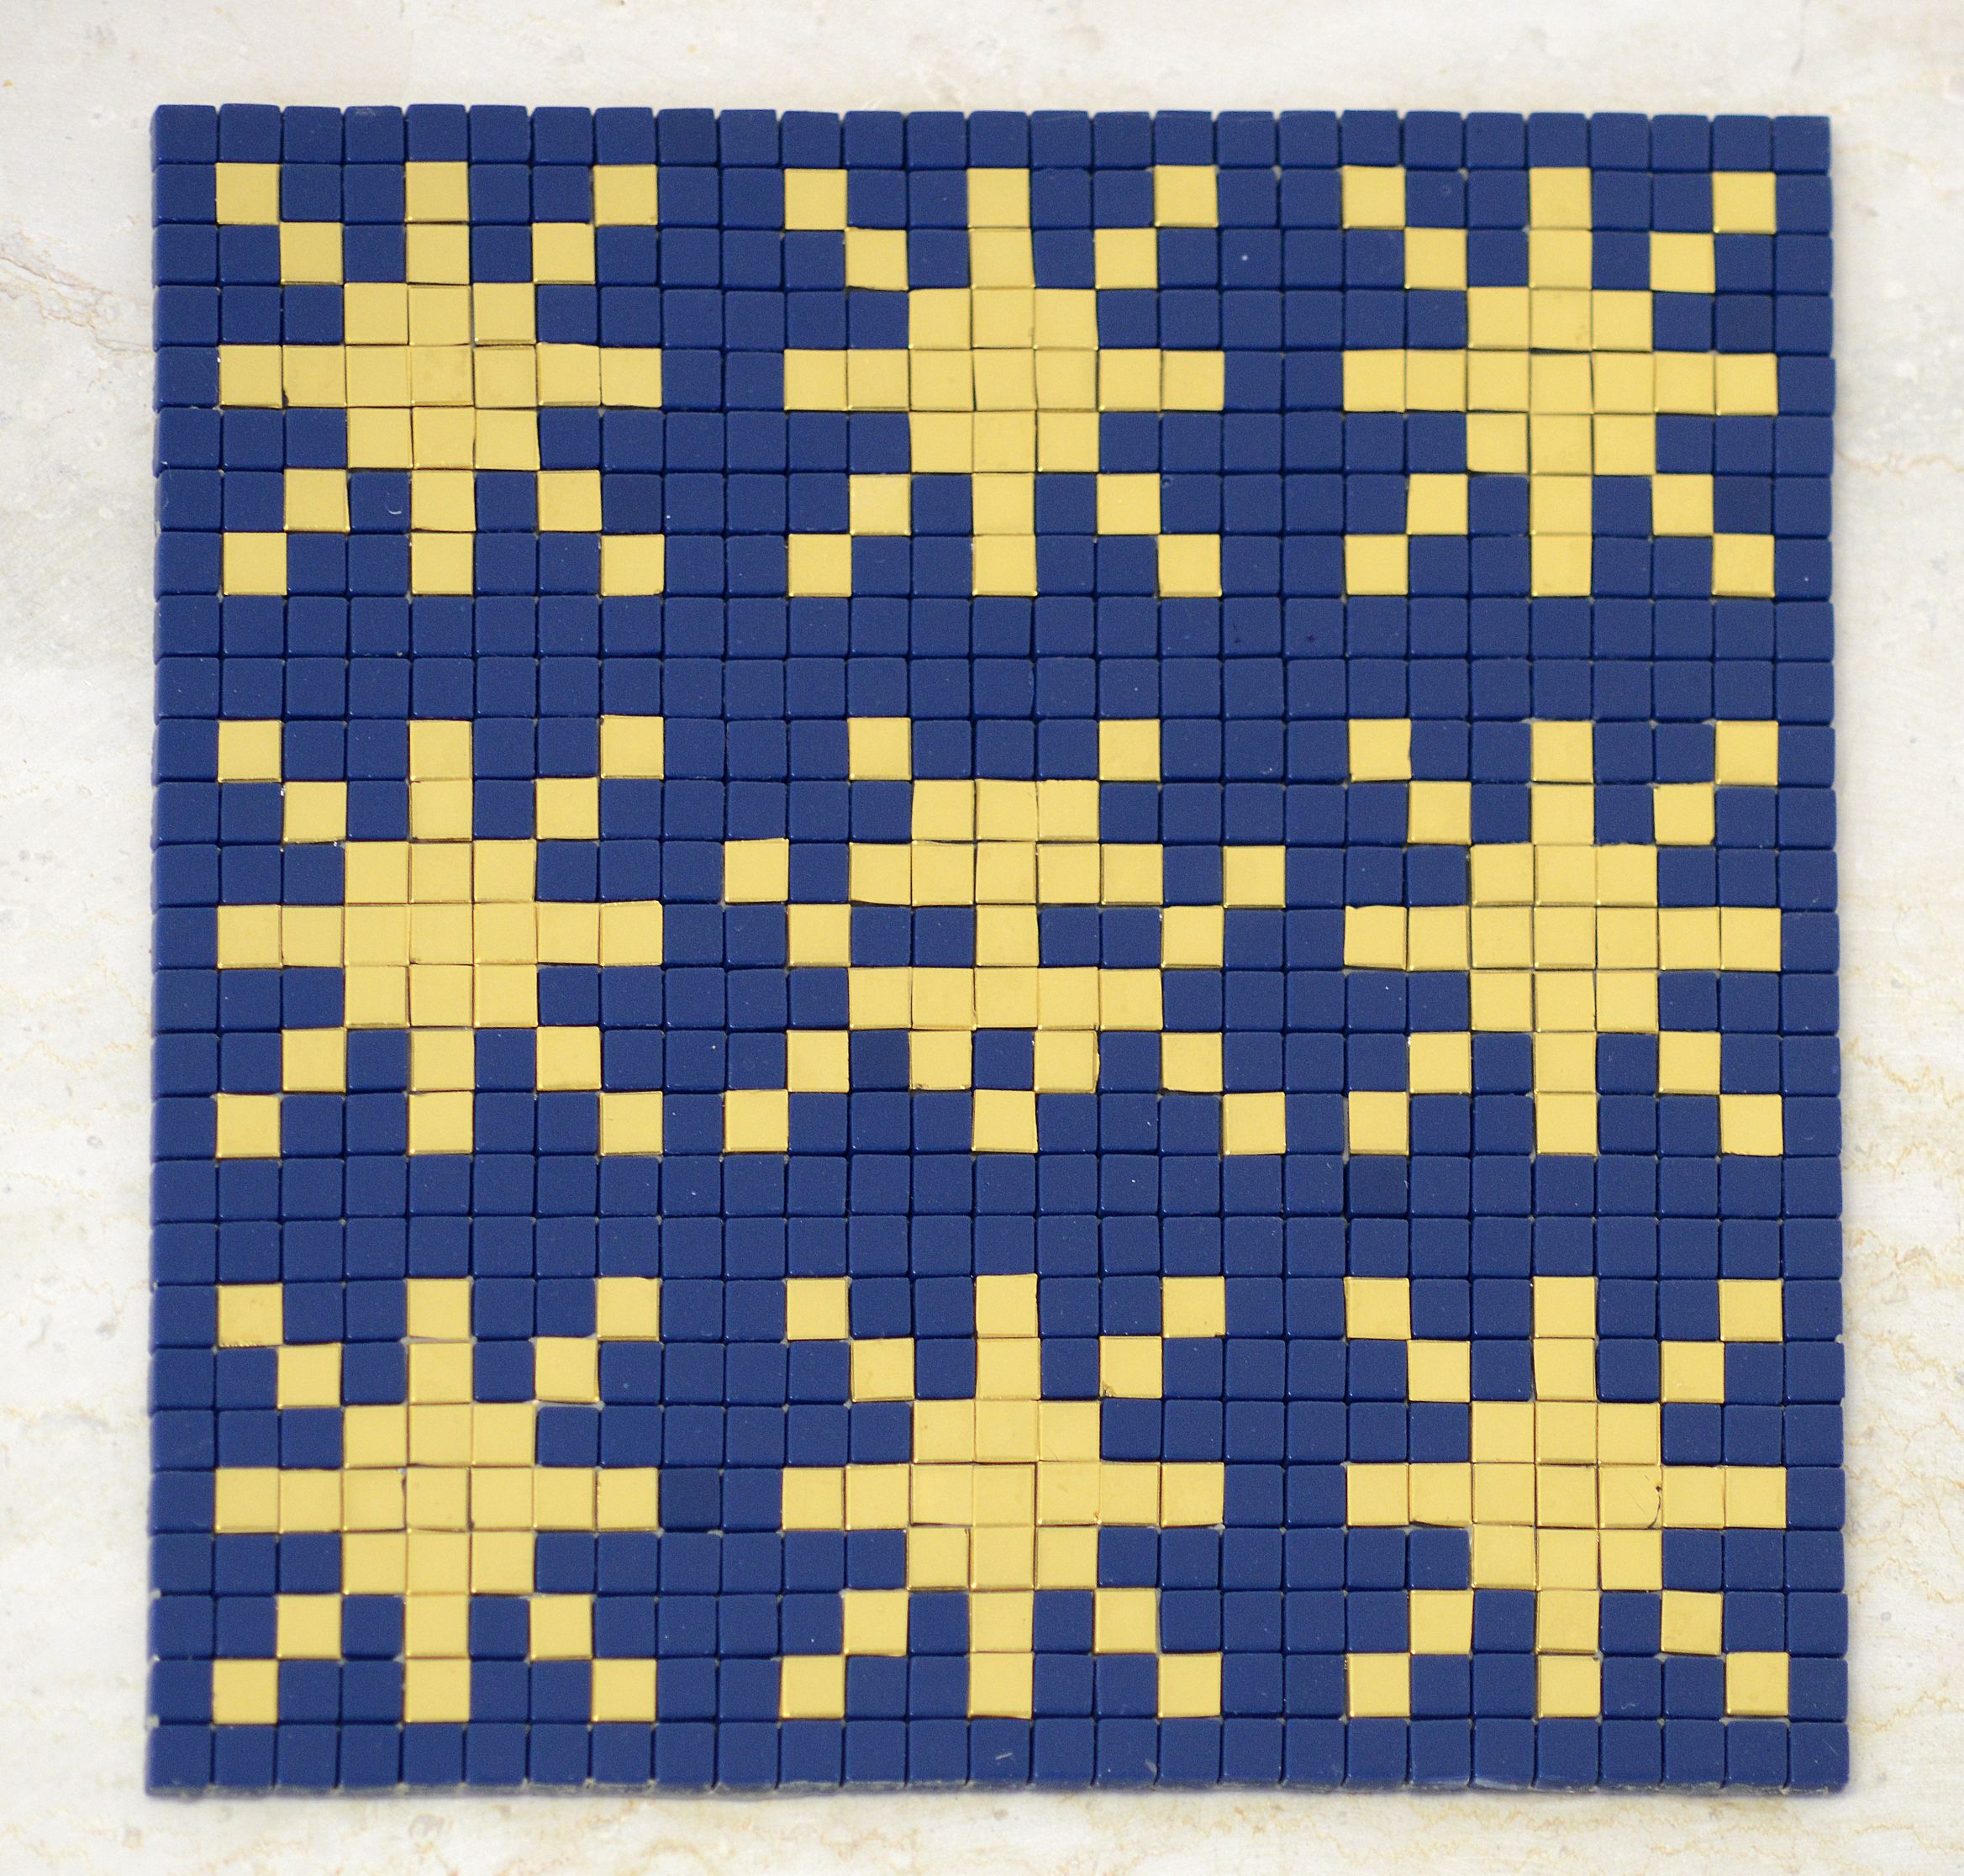 Invader, Senza titolo, 2014, piastrelle ceramiche, Ravenna, MAR - Museo d’Arte della città di Ravenna